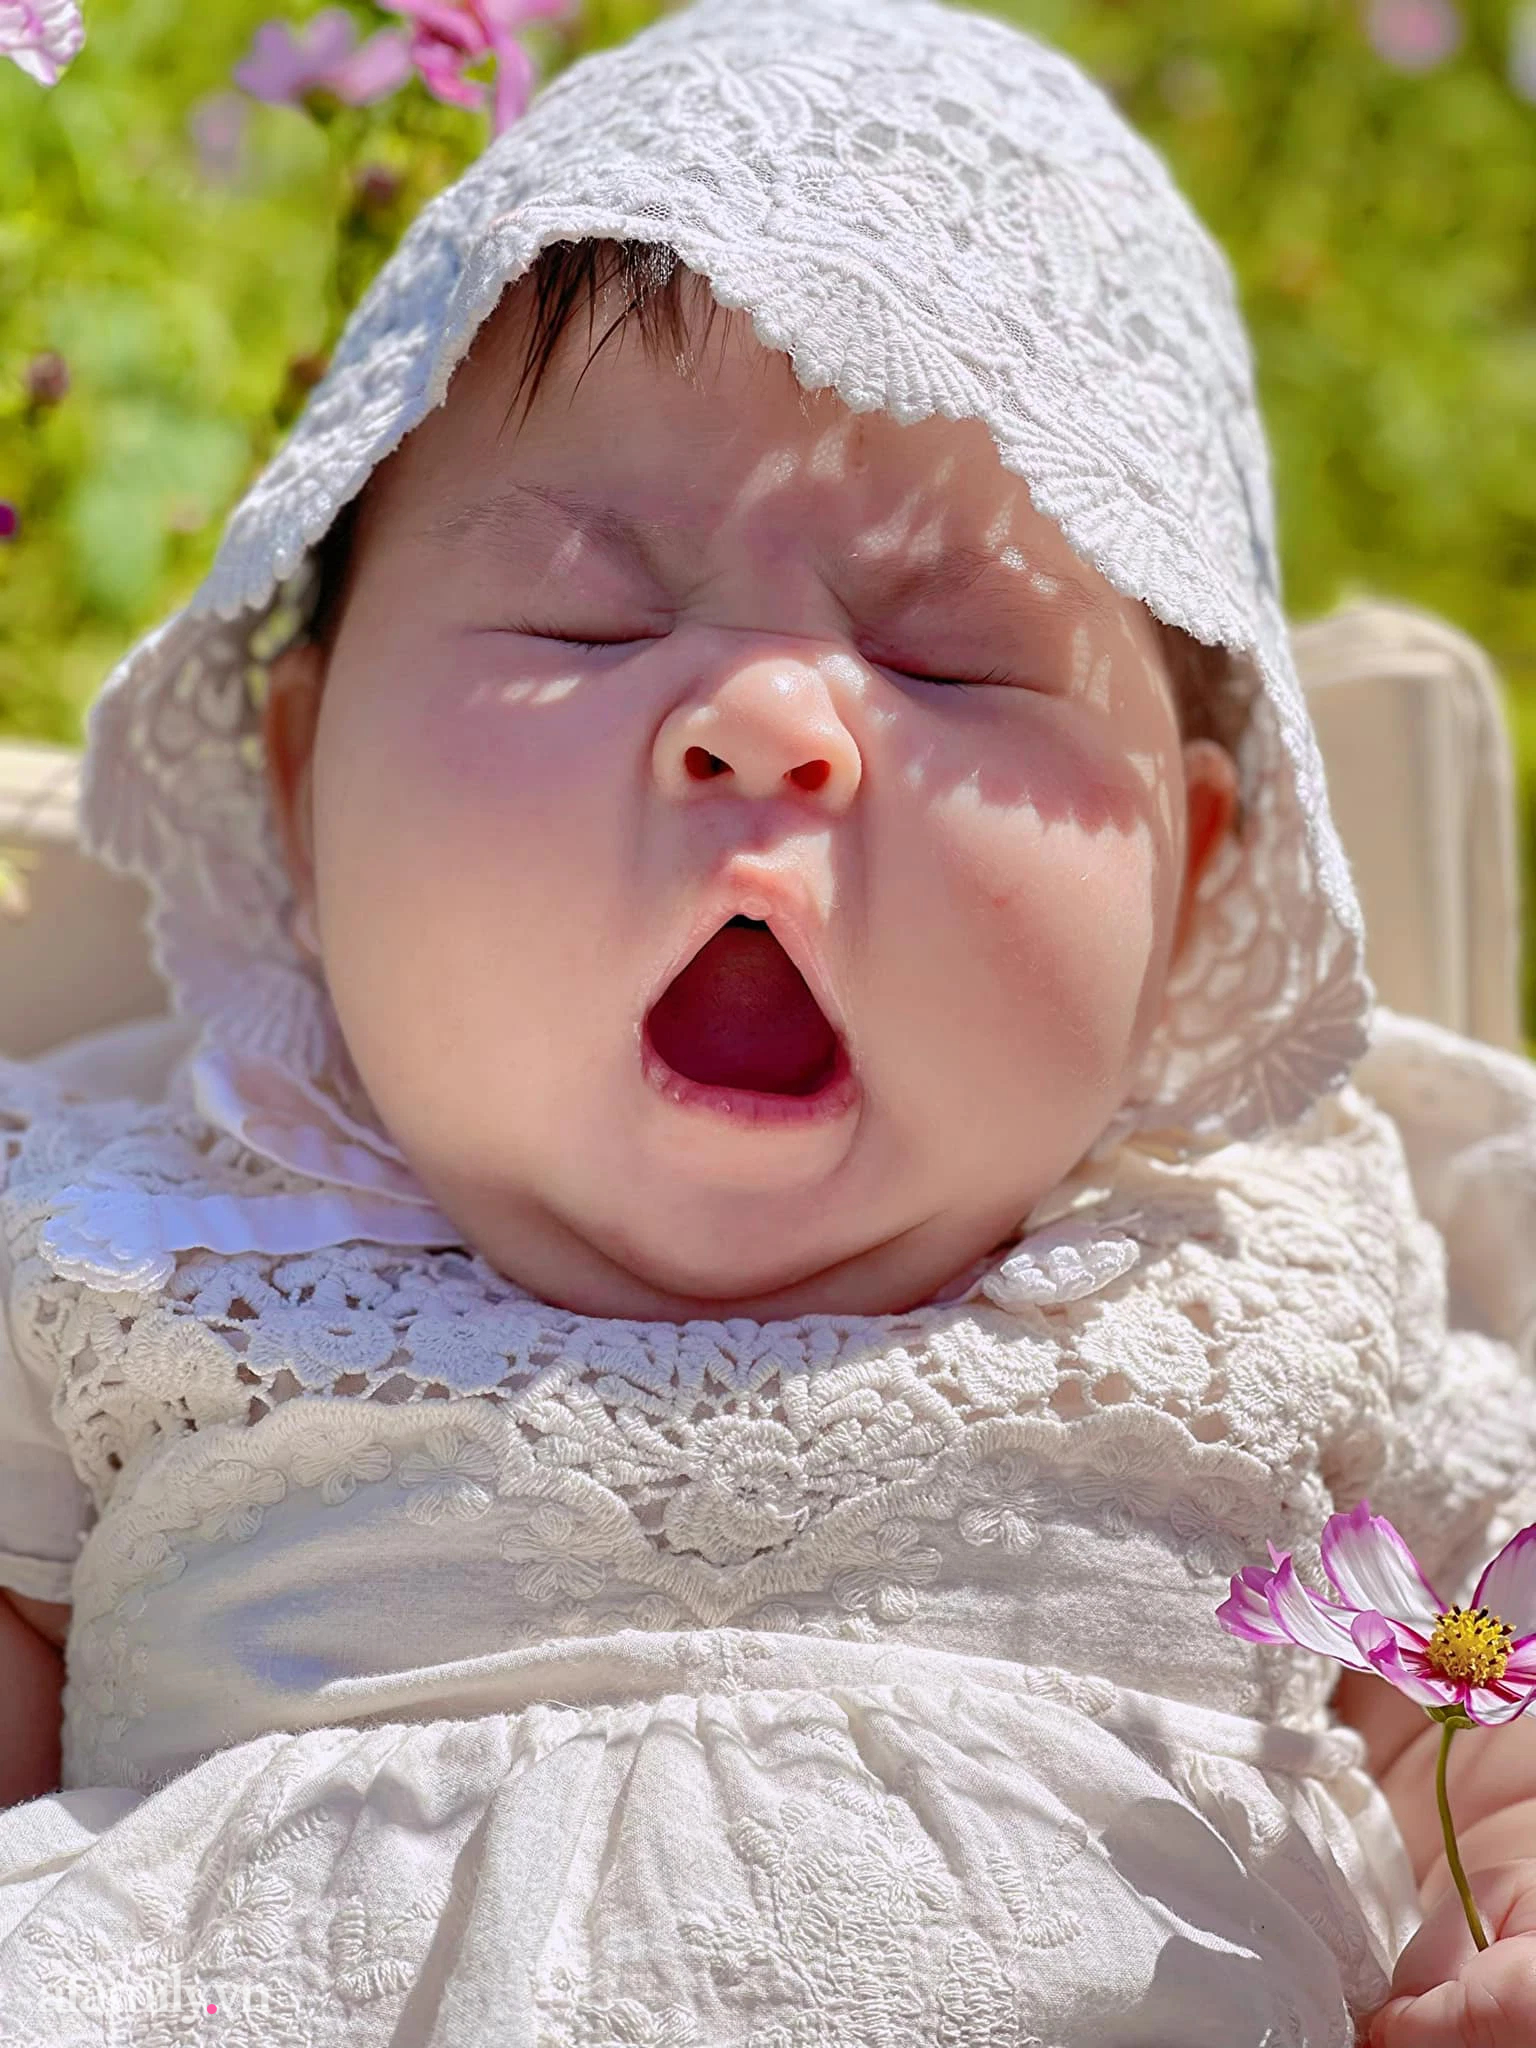 Hình ảnh em bé khóc có thể khiến bạn cảm thấy xót xa, nhưng đôi khi cũng rất đáng yêu. Hãy xem hình ảnh này để cảm nhận sự đáng yêu trong những khoảnh khắc khóc của em bé.